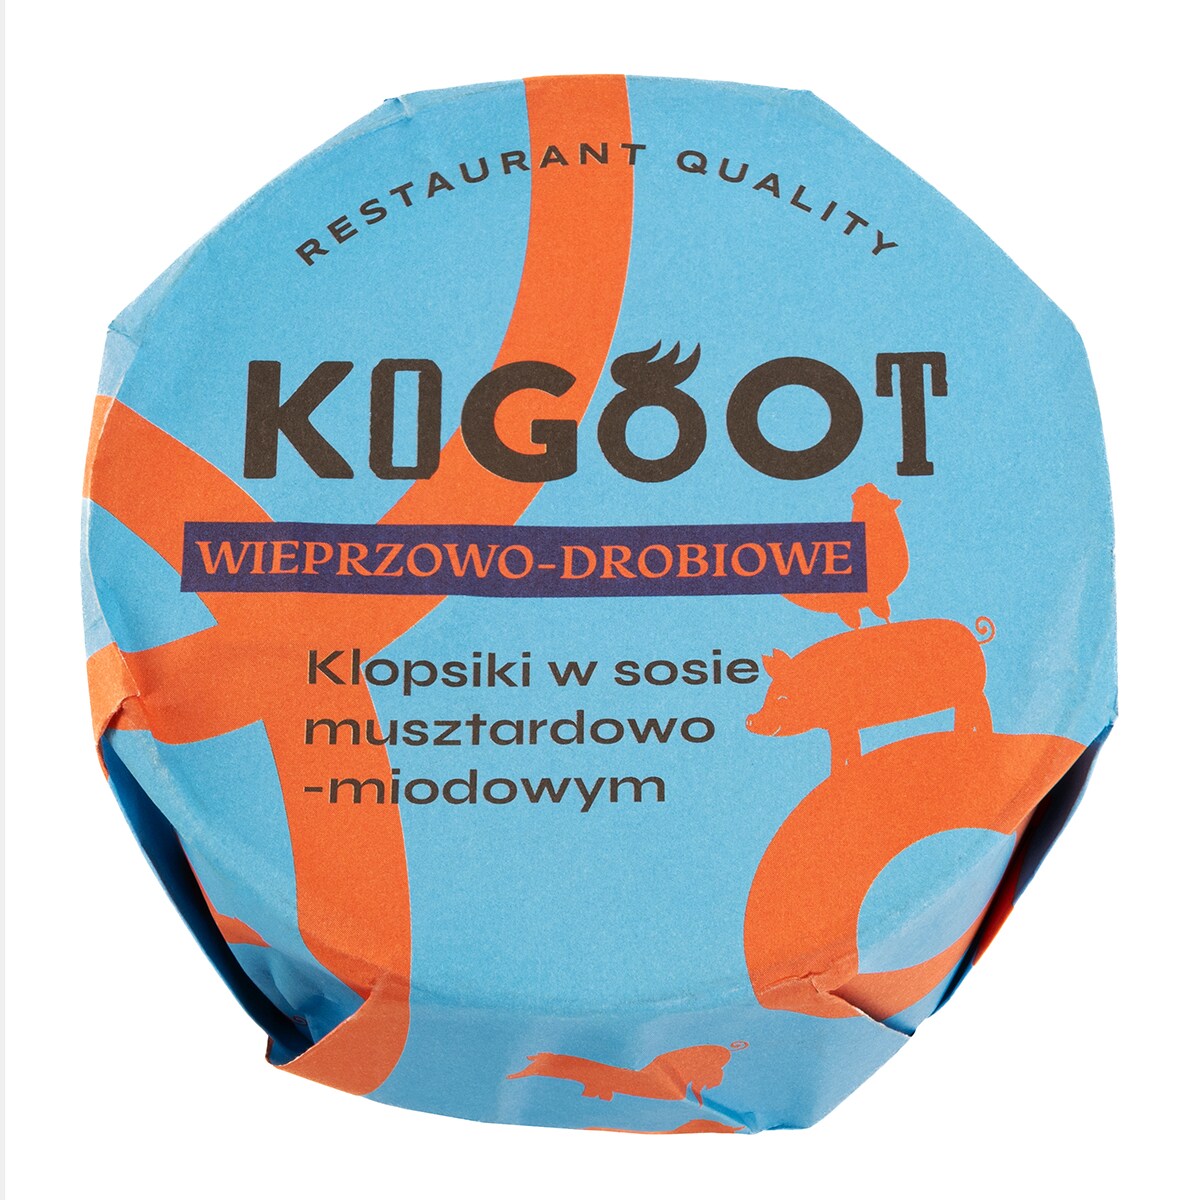 Консервовані продукти Kogoot - Фрикадельки в гірчично-медовому соусі 300 г